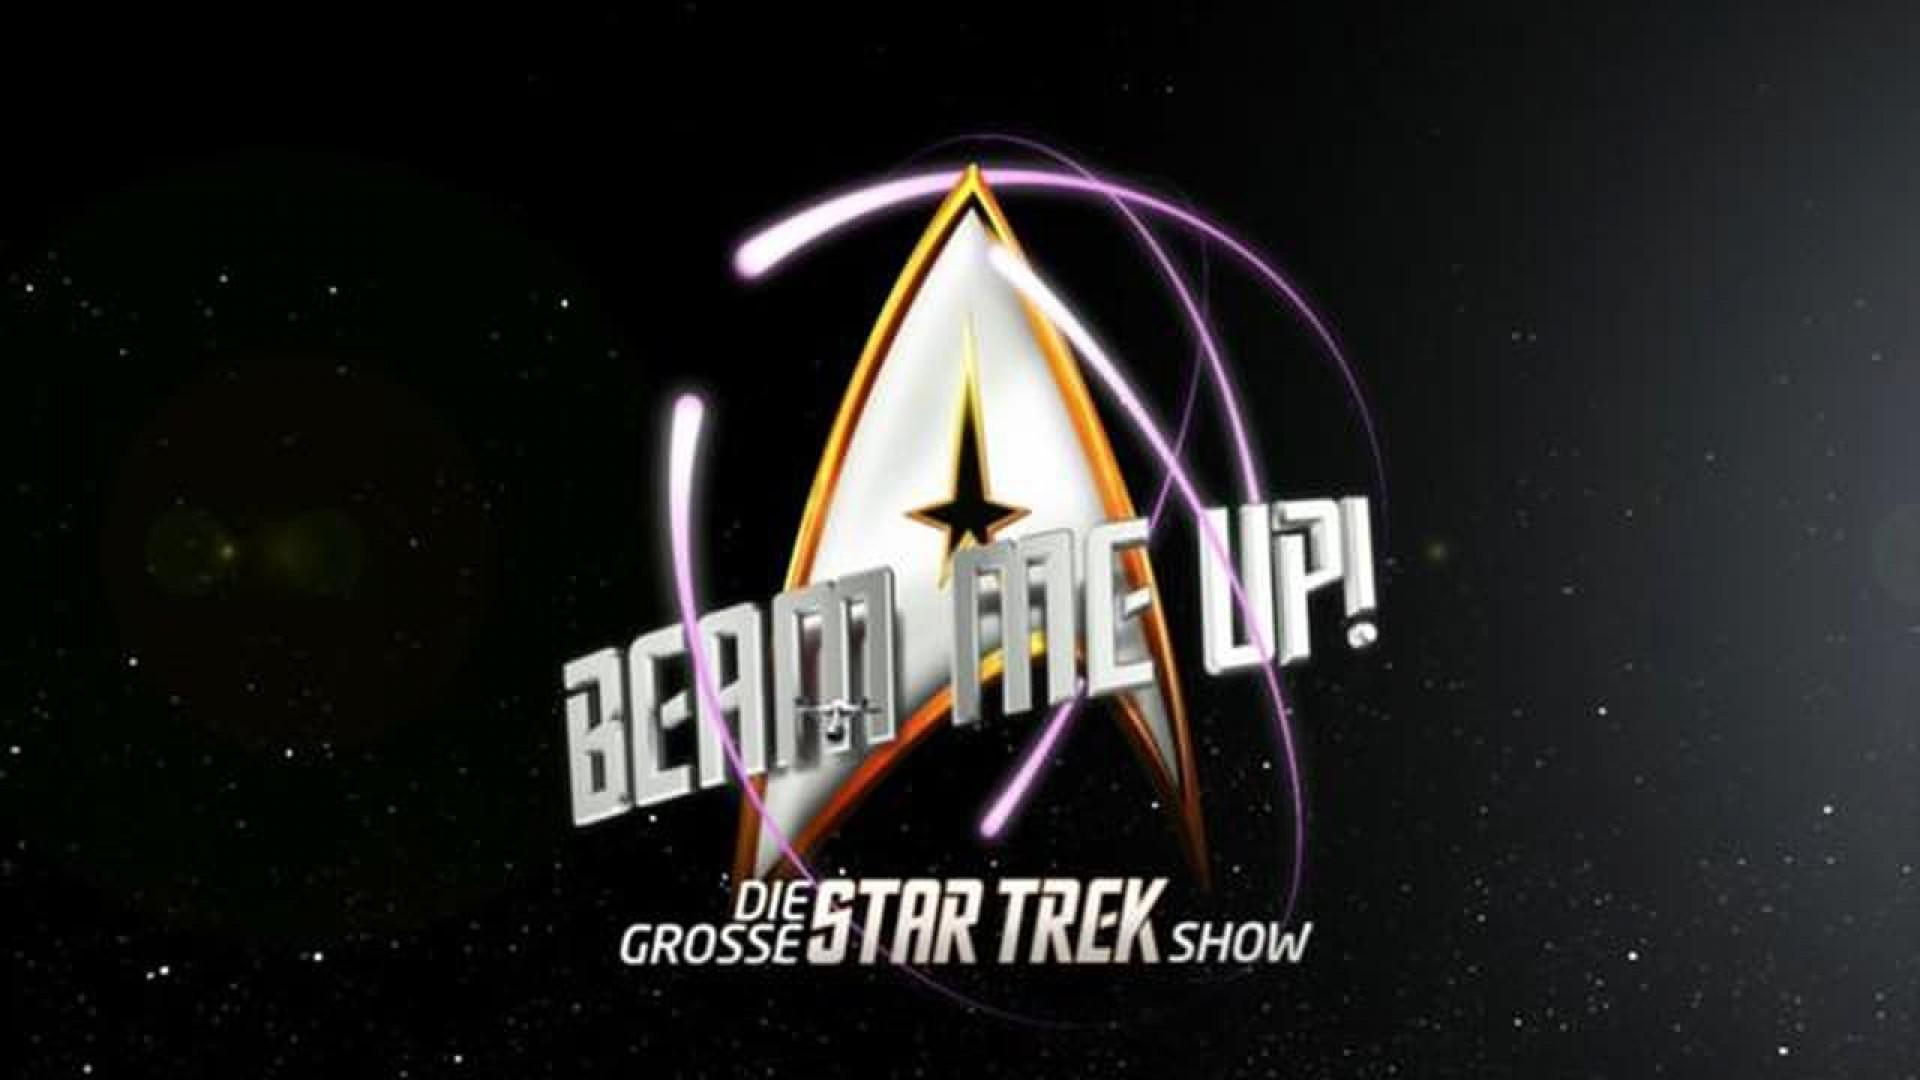 Beam me Up! – Die große Star Trek Show